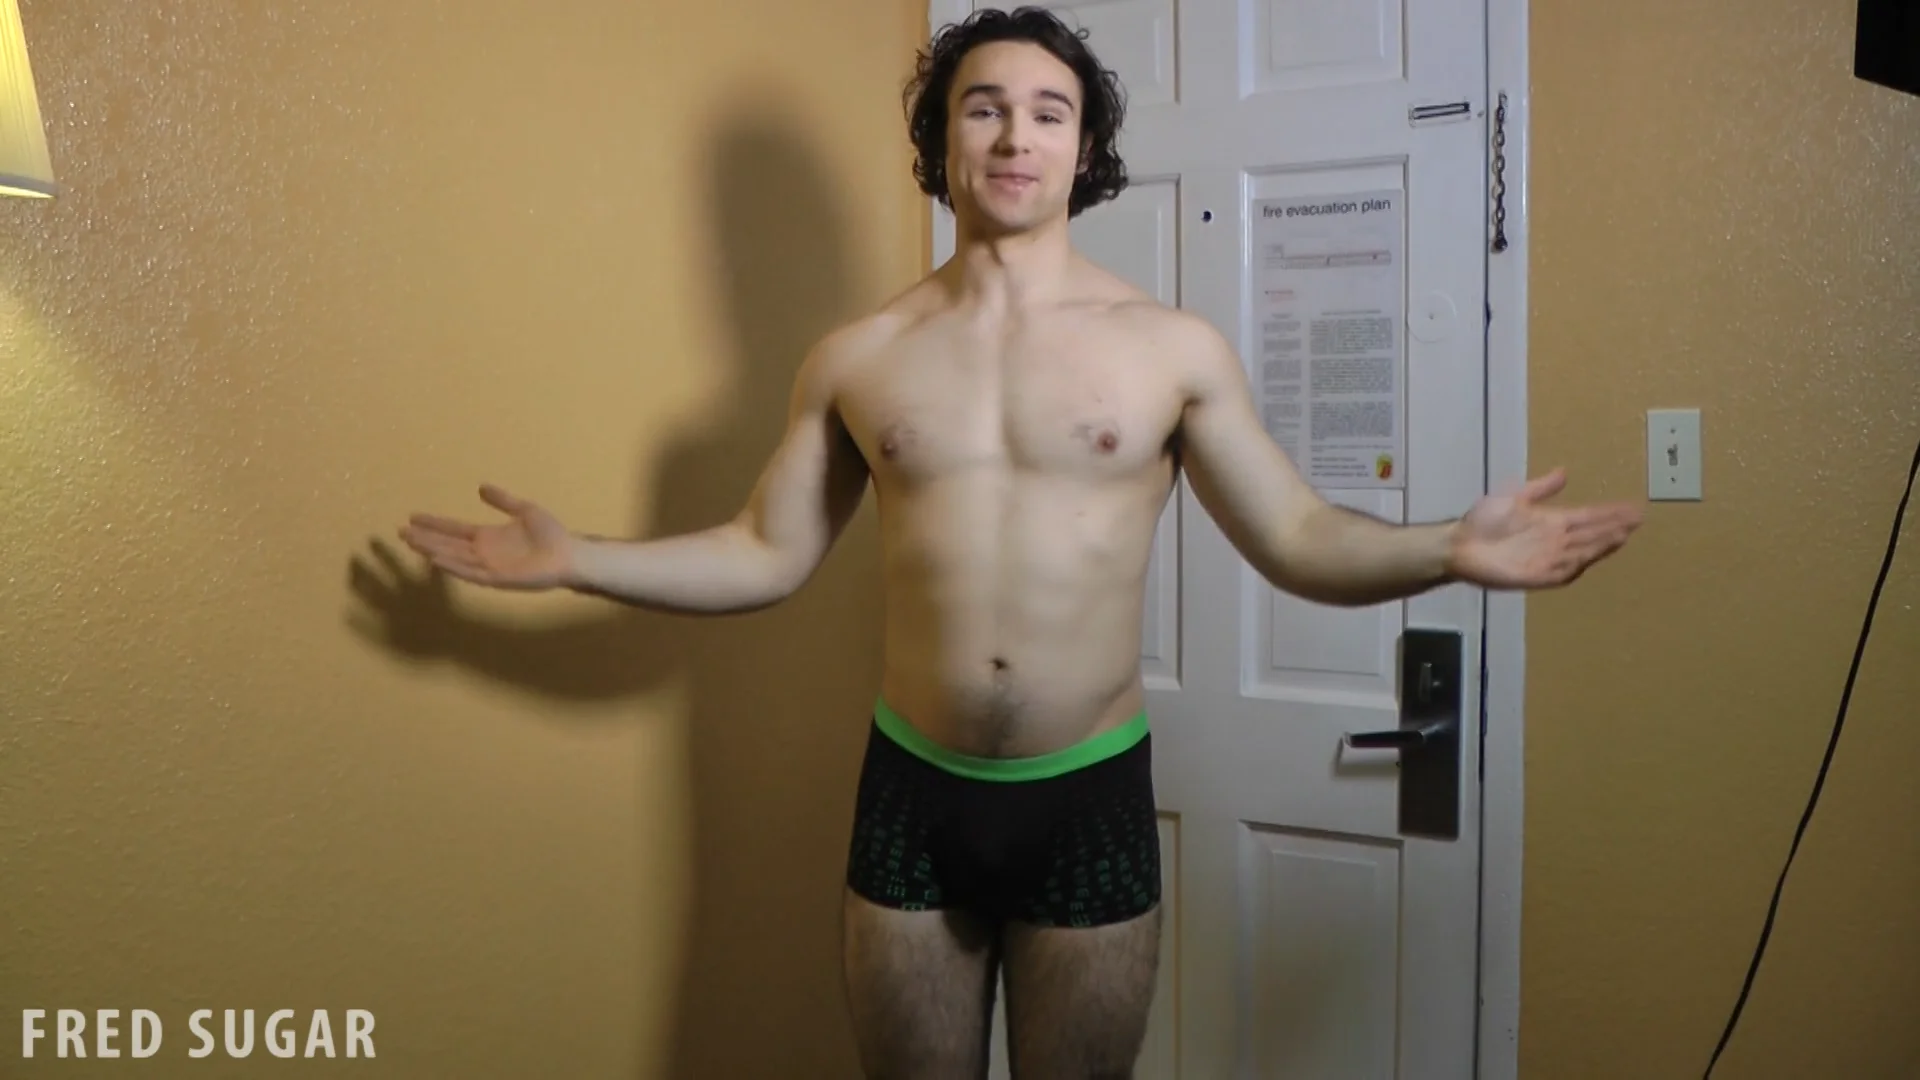 Male model unboxes underwear on Vimeo